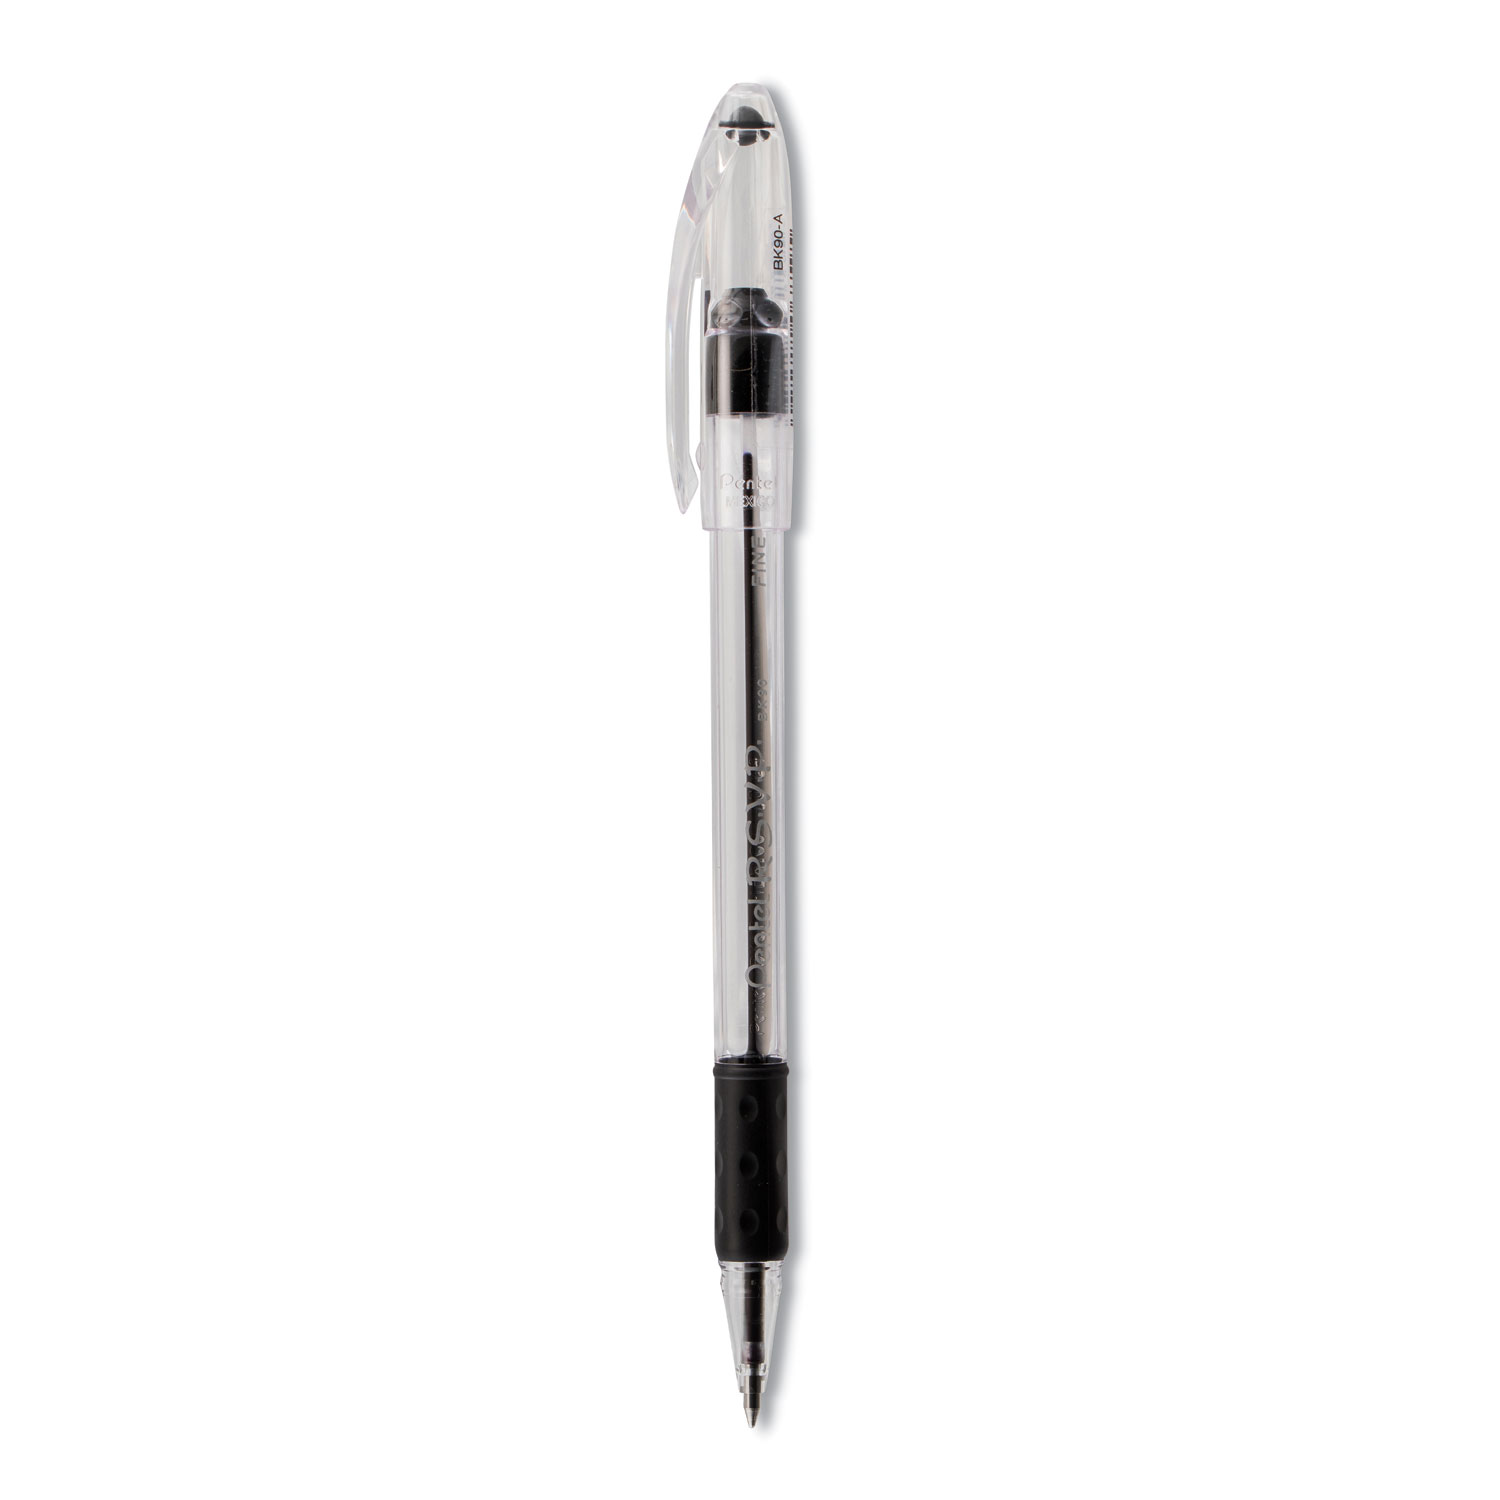 R.S.V.P.® Ballpoint Pen